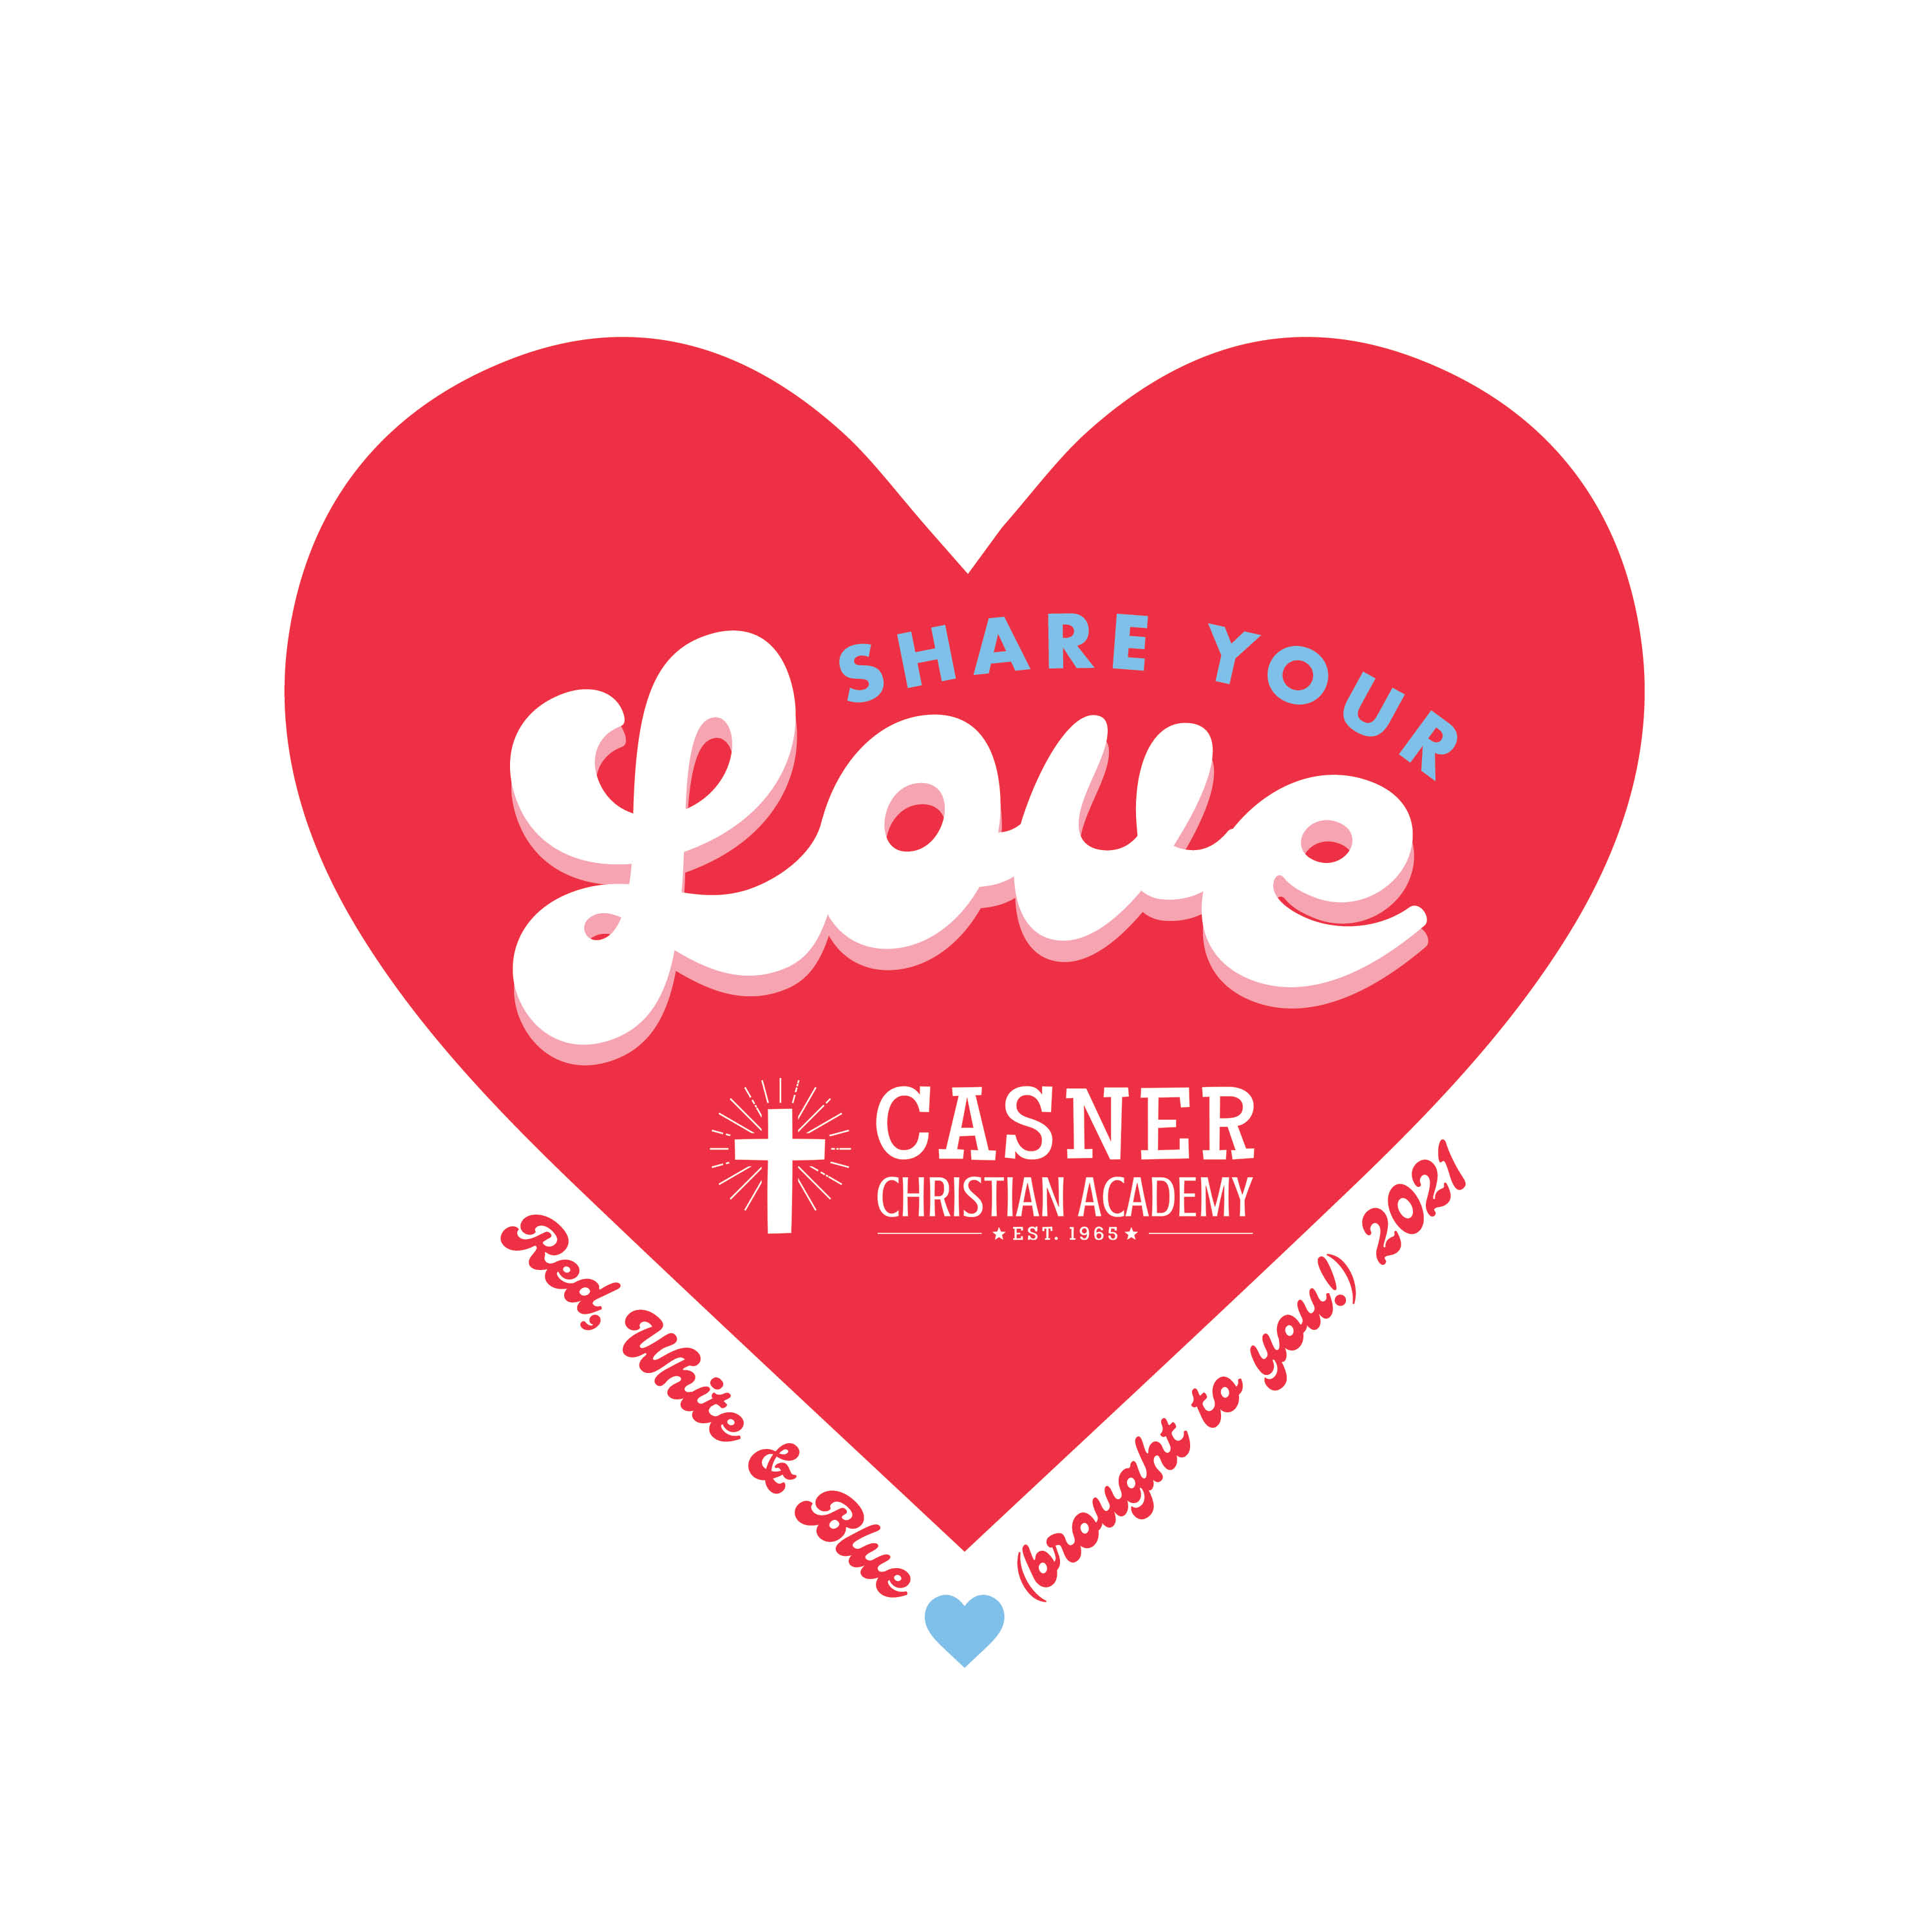 Casner Christian Academy logo